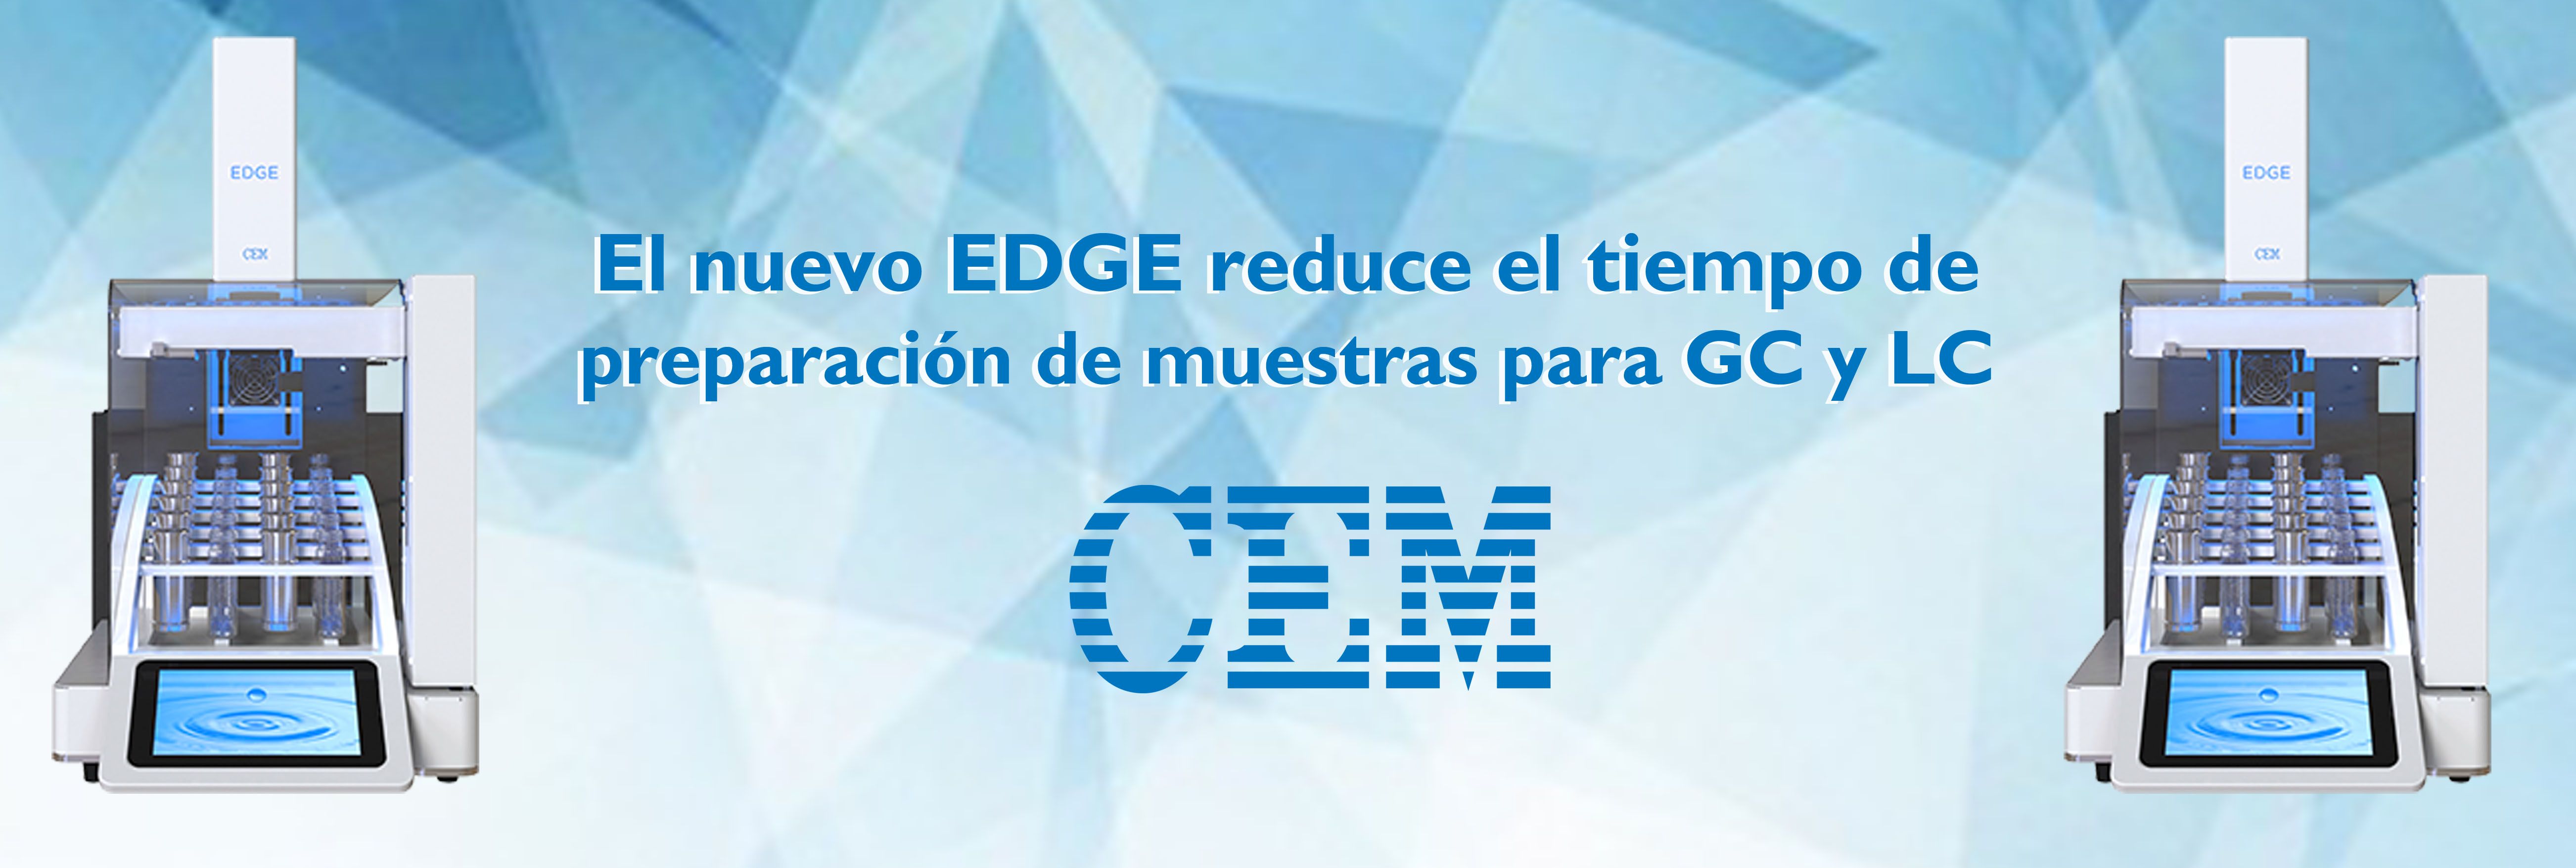 El nuevo Edge de CEM reduce el tiempo de preparación de muestras para GC y LC